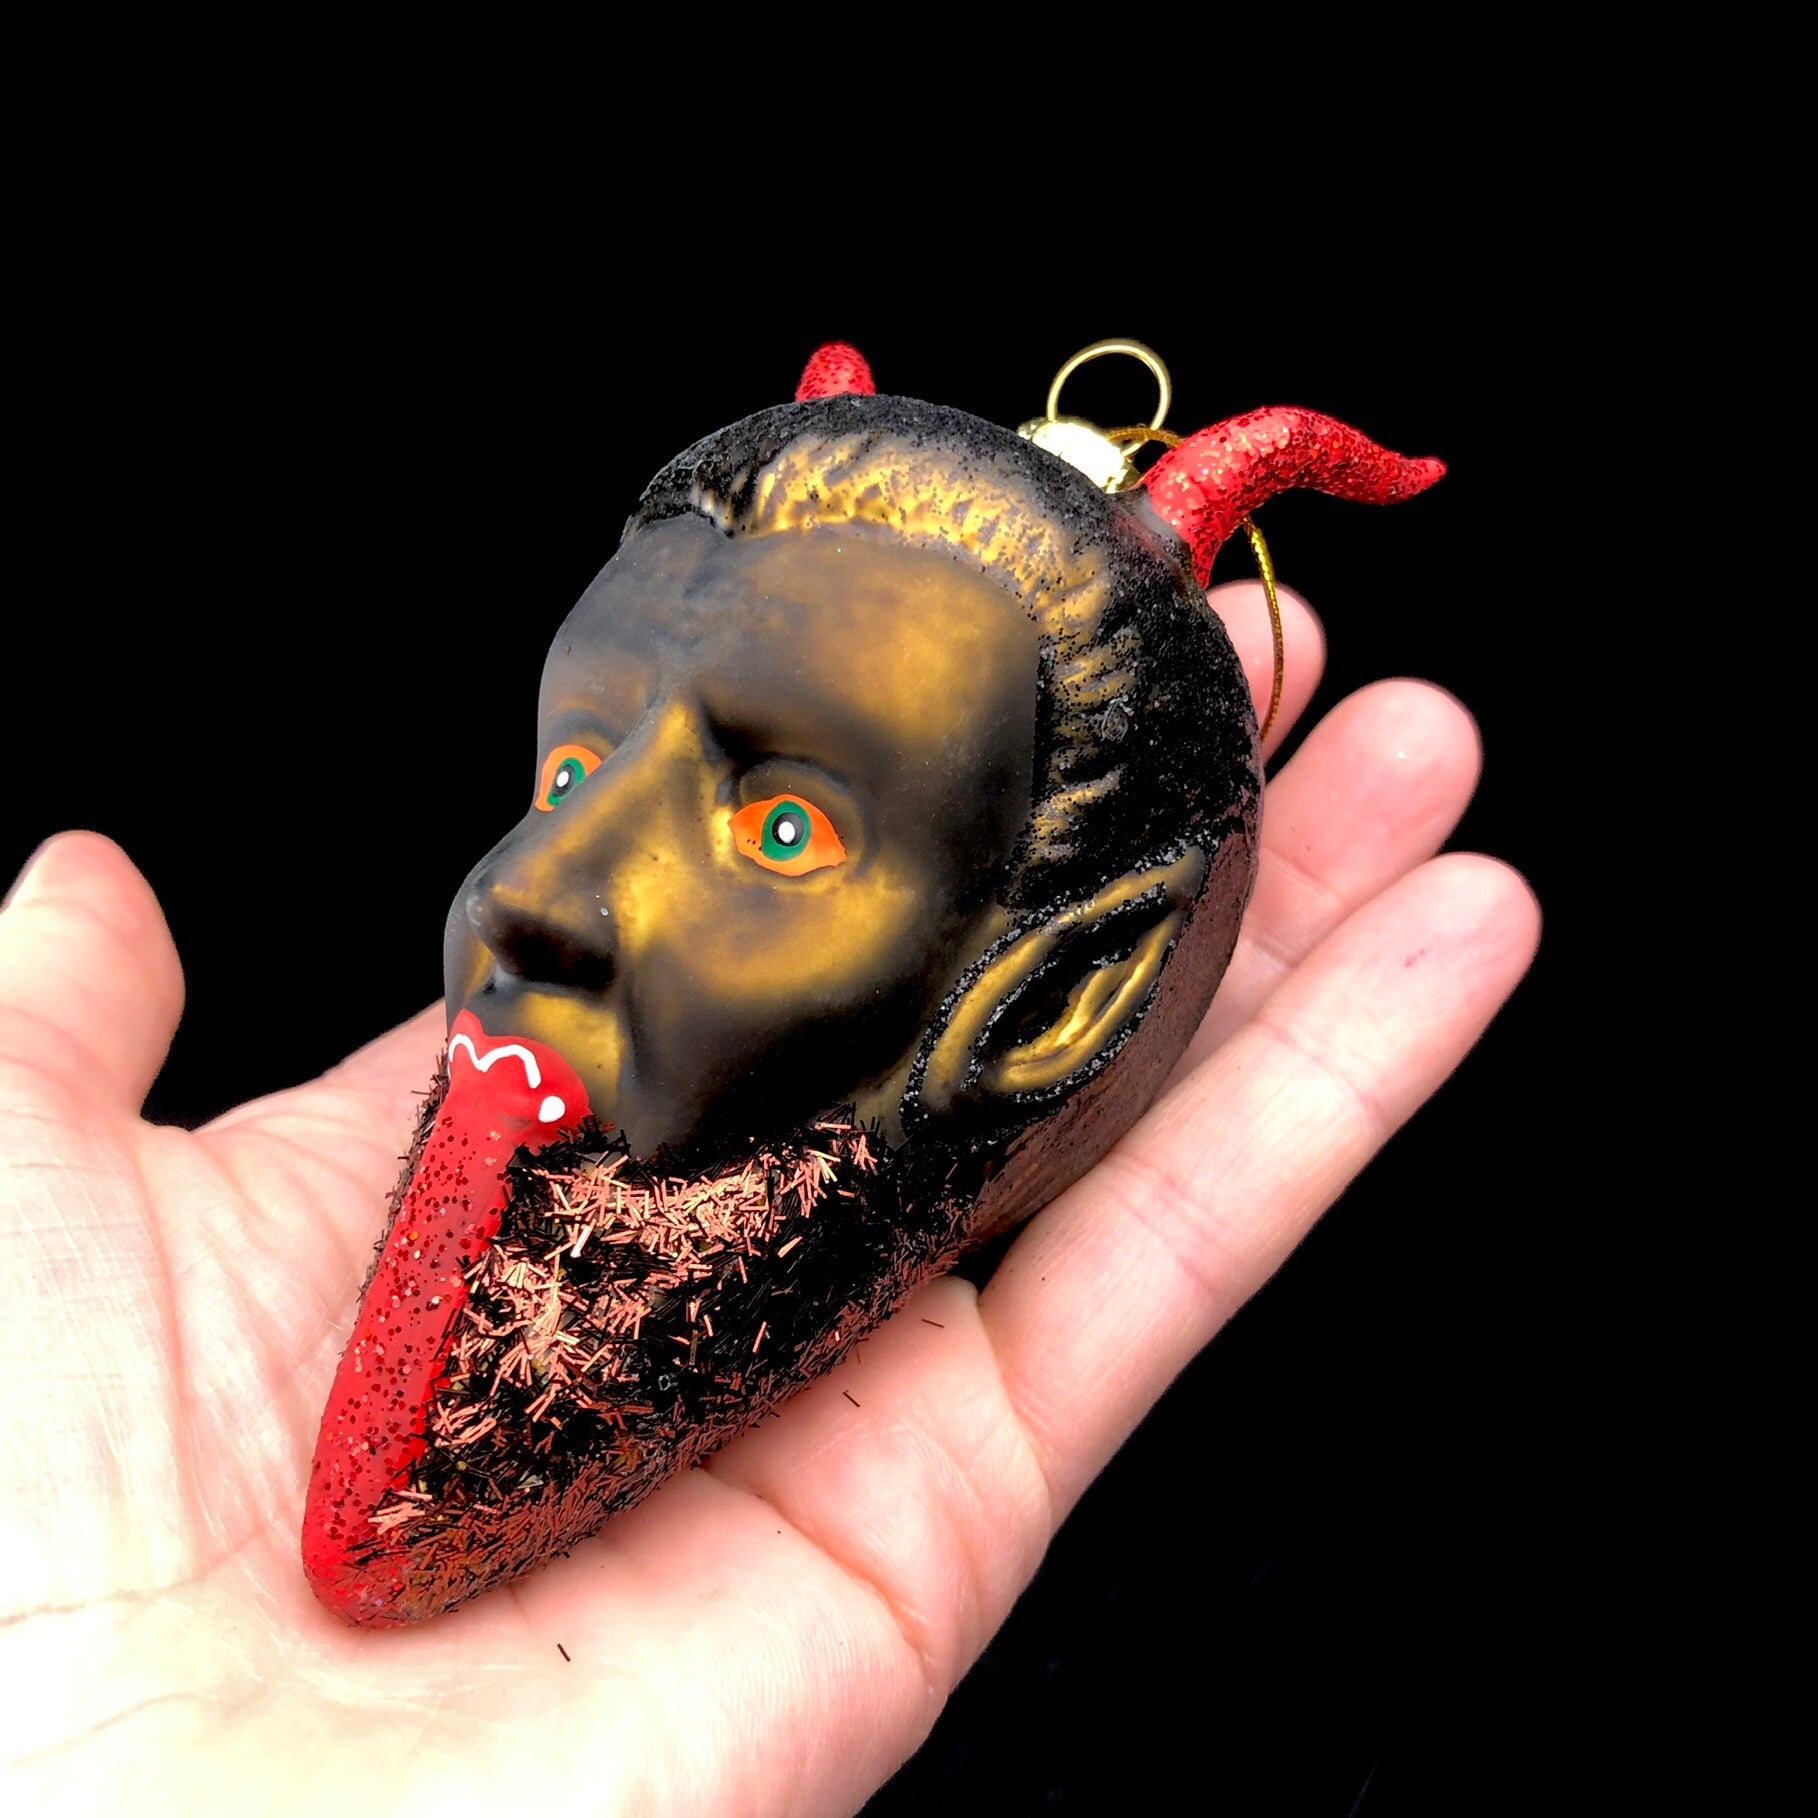 Krampus Ornament shown in hand